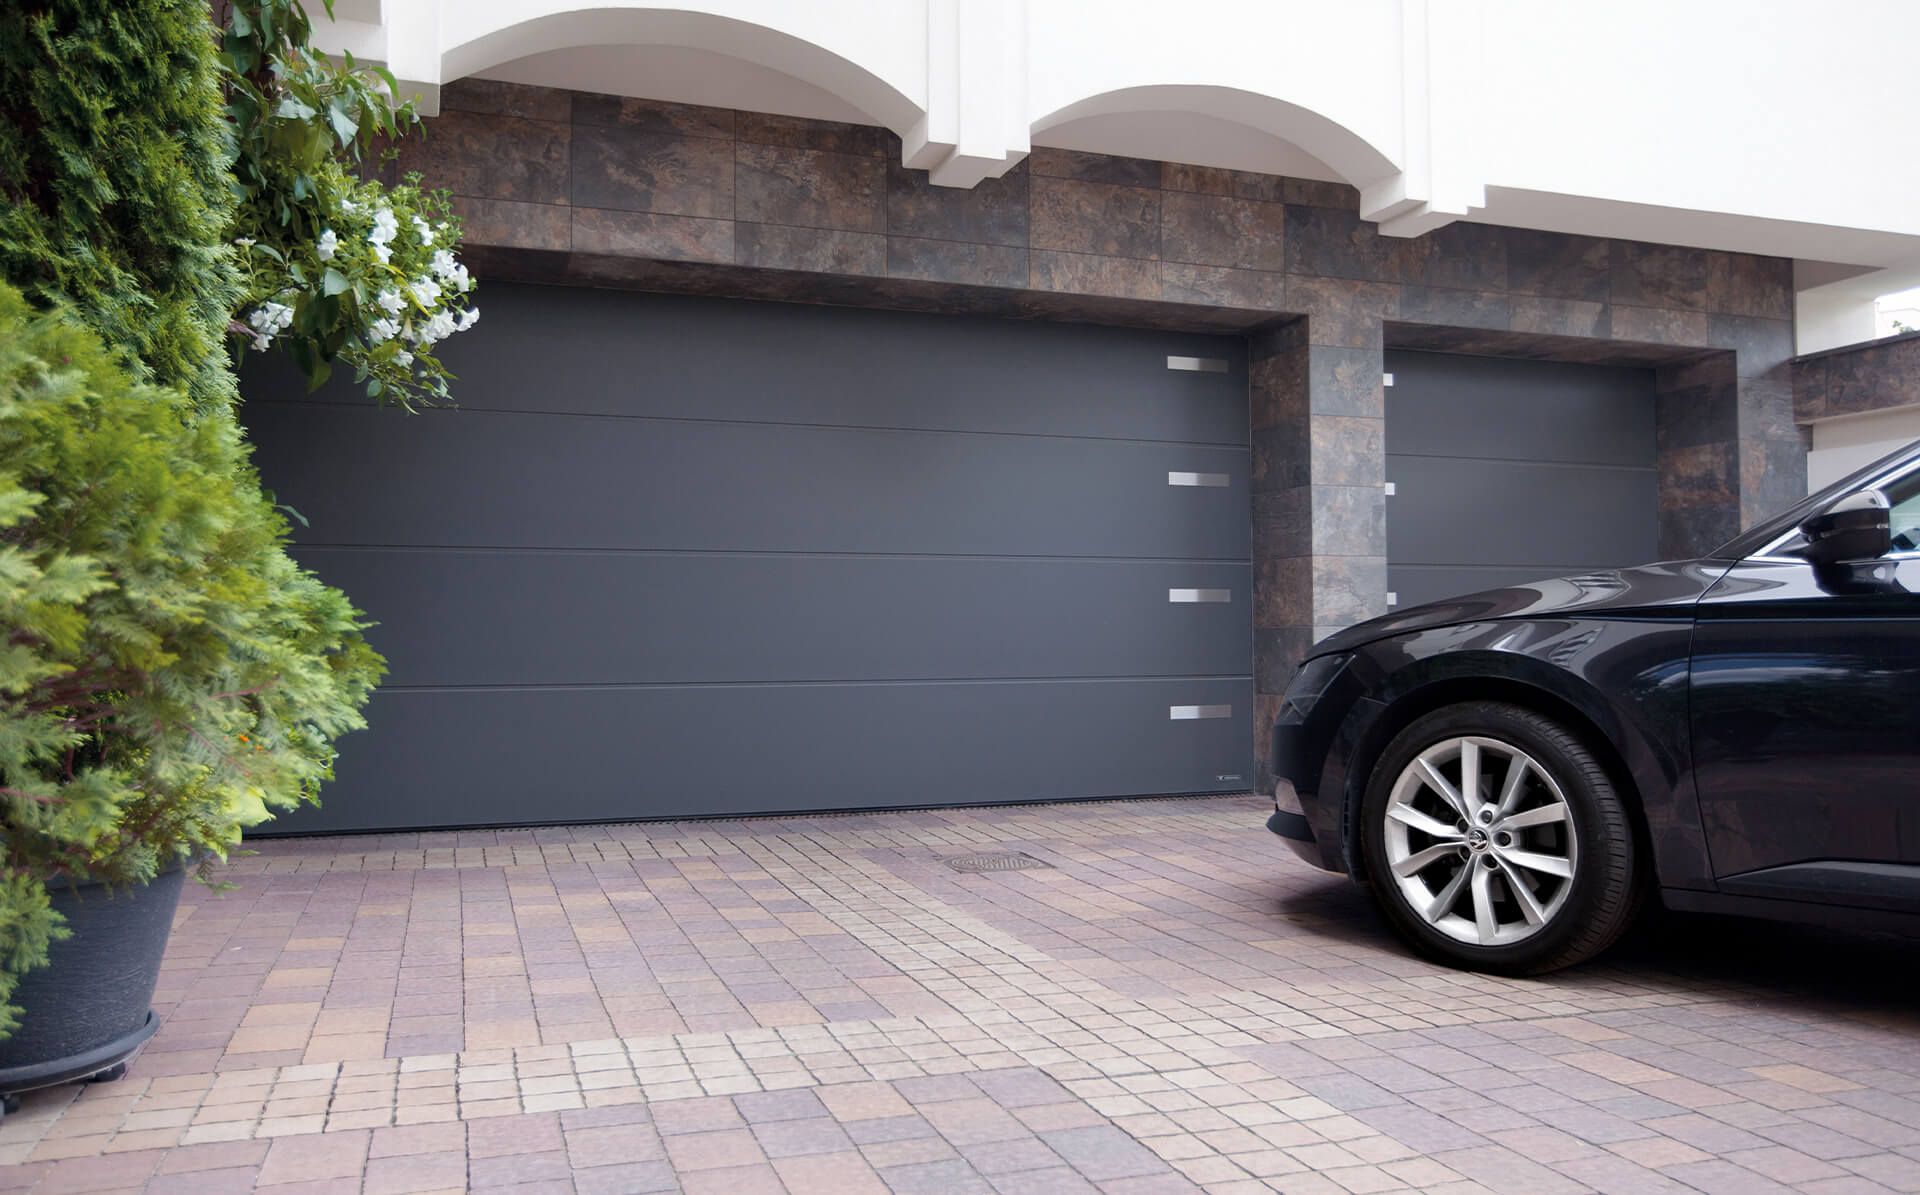  Energooszczędna brama garażowa – czyli jaka? Rozwiewamy wątpliwości